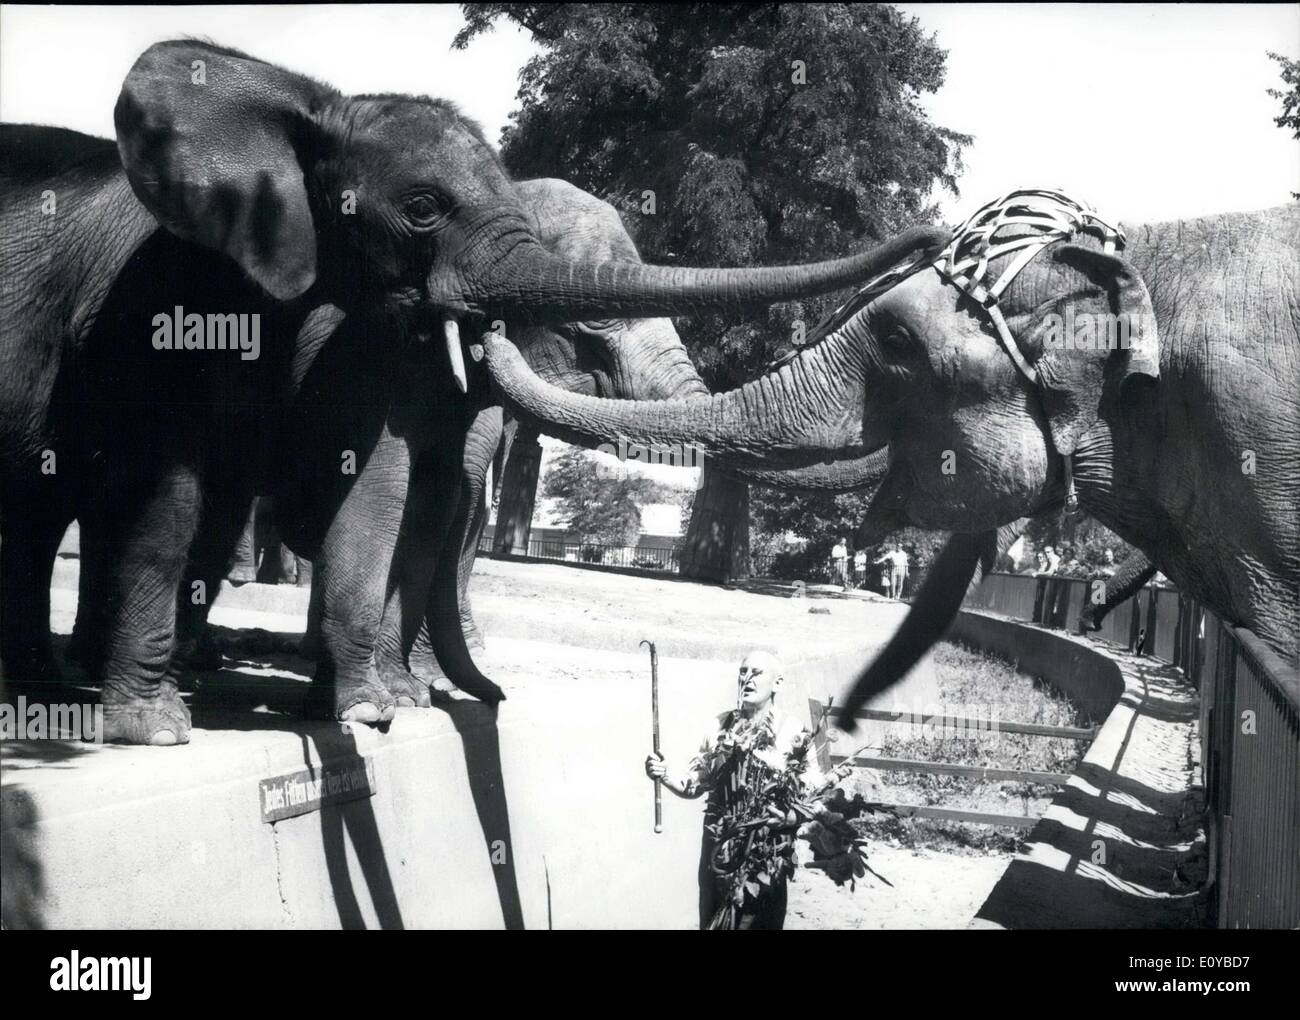 Agosto 01, 1969 - Questi elefanti indiani sono saluto uno un altro. I due sulla sinistra appartengono allo Zoo di Berlino, mentre quella di Foto Stock